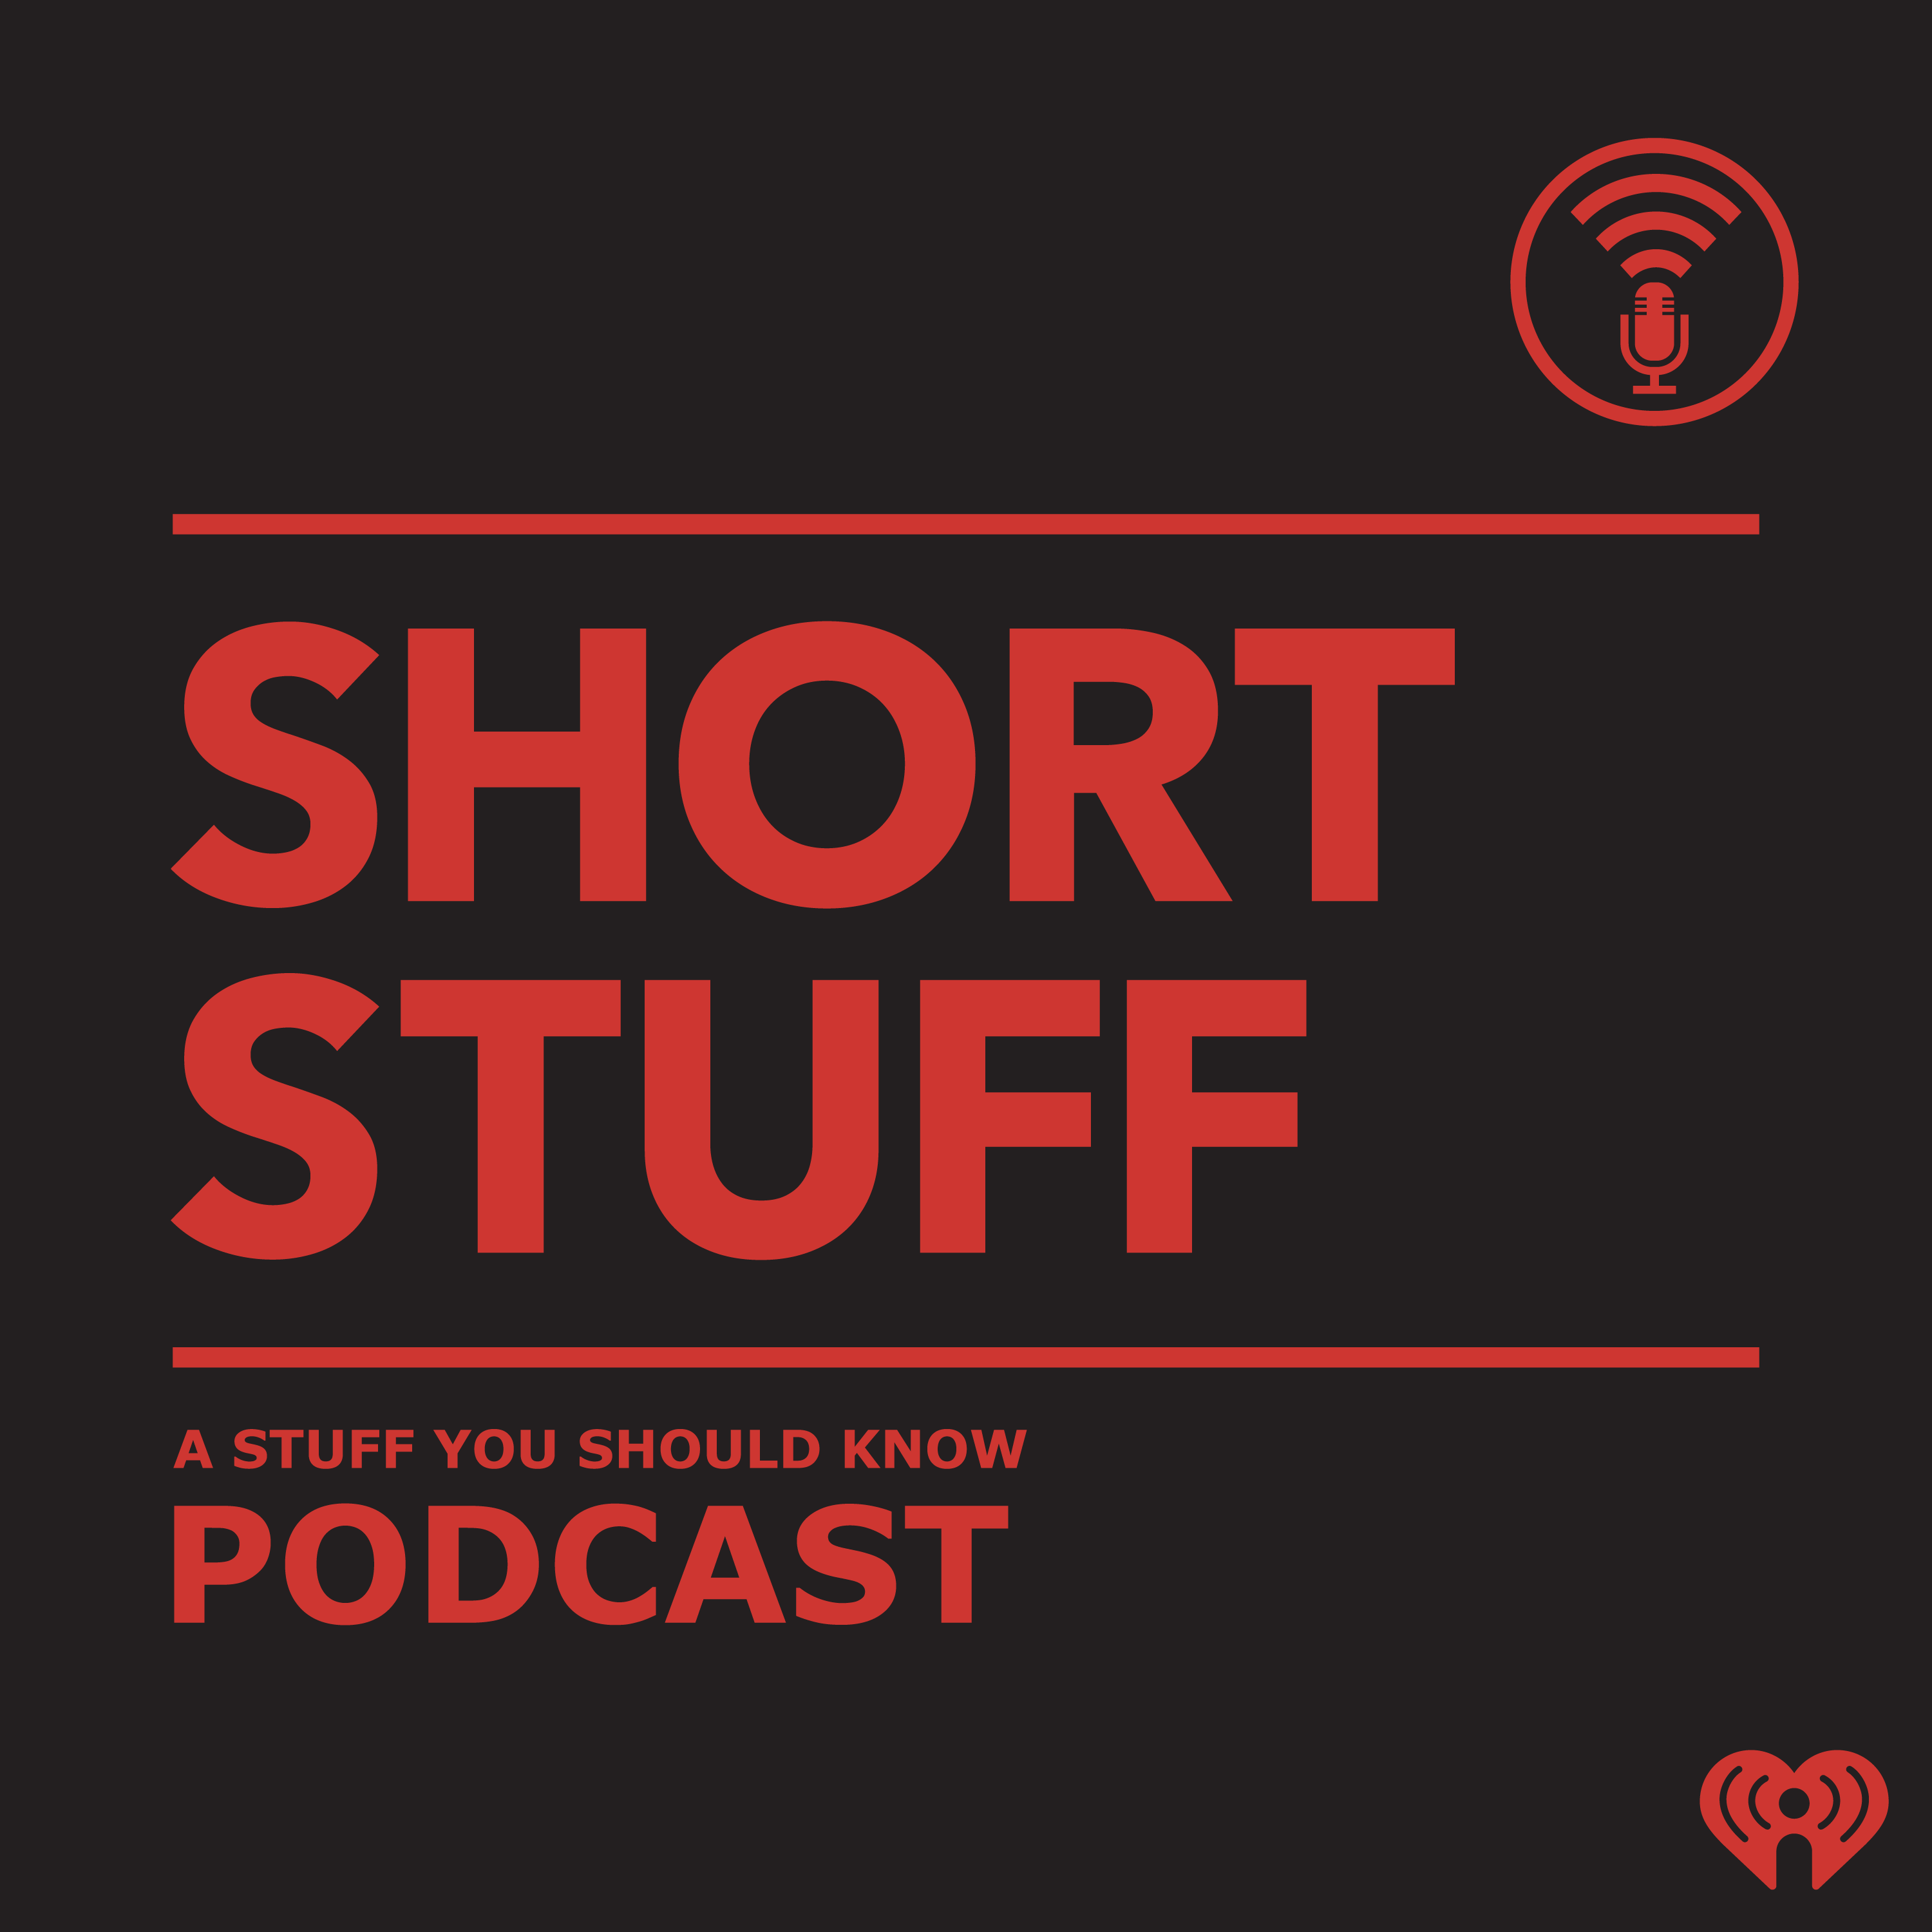 Short Stuff podcast